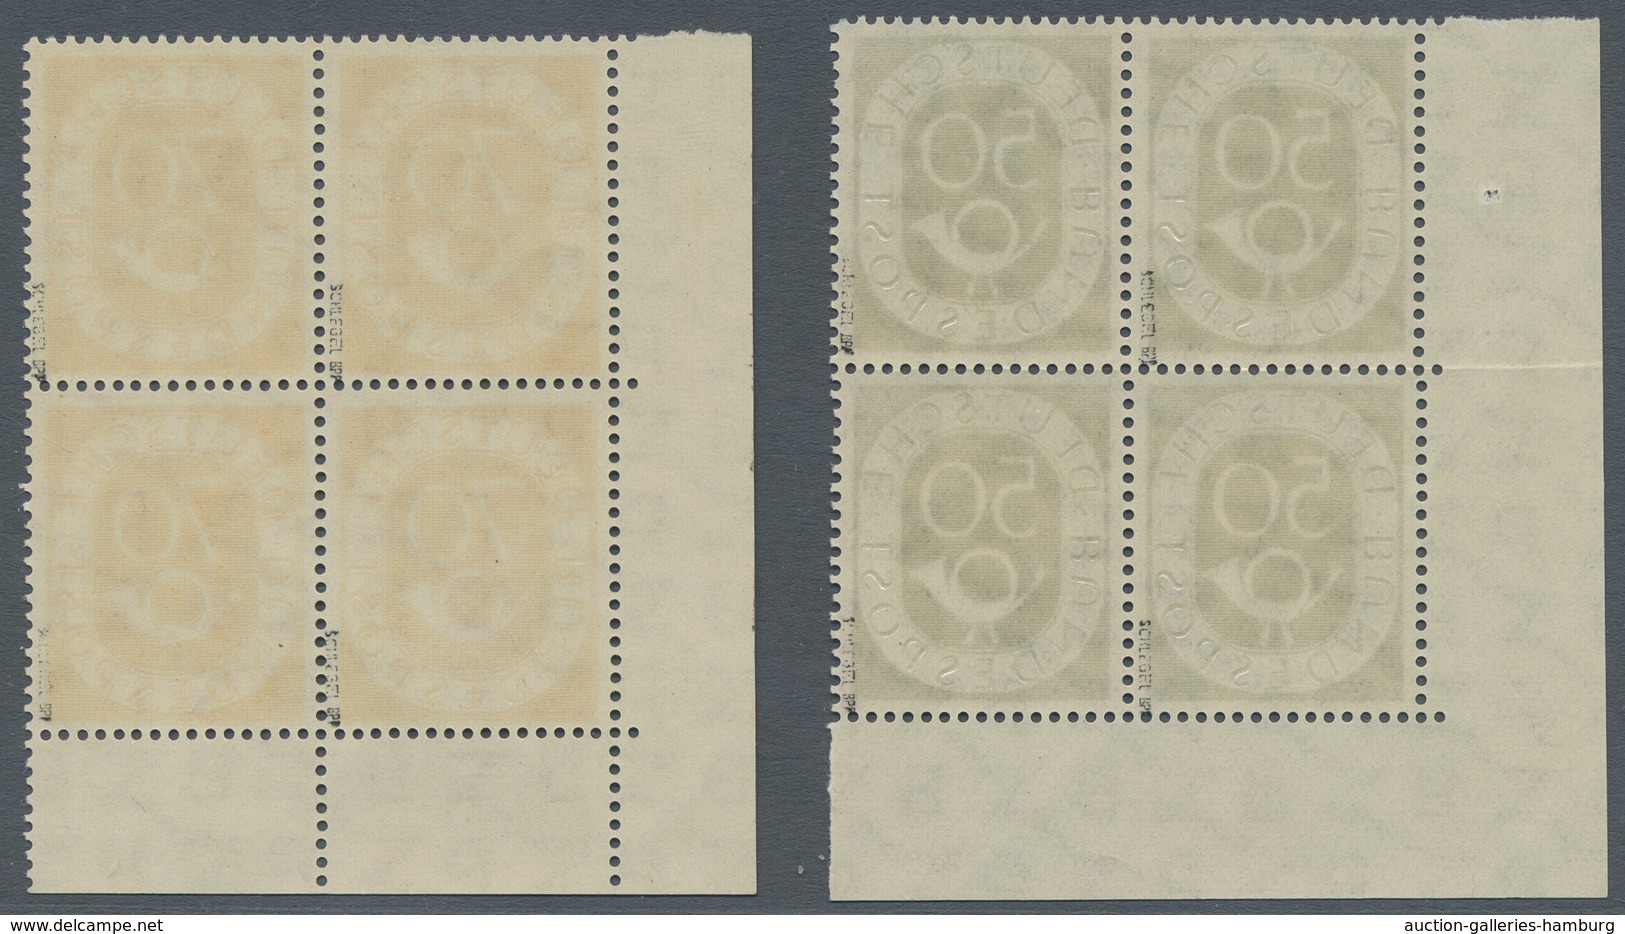 Bundesrepublik Deutschland: 1951, "Posthorn", postfrischer Viererblocksatz in tadelloser Erhaltung m